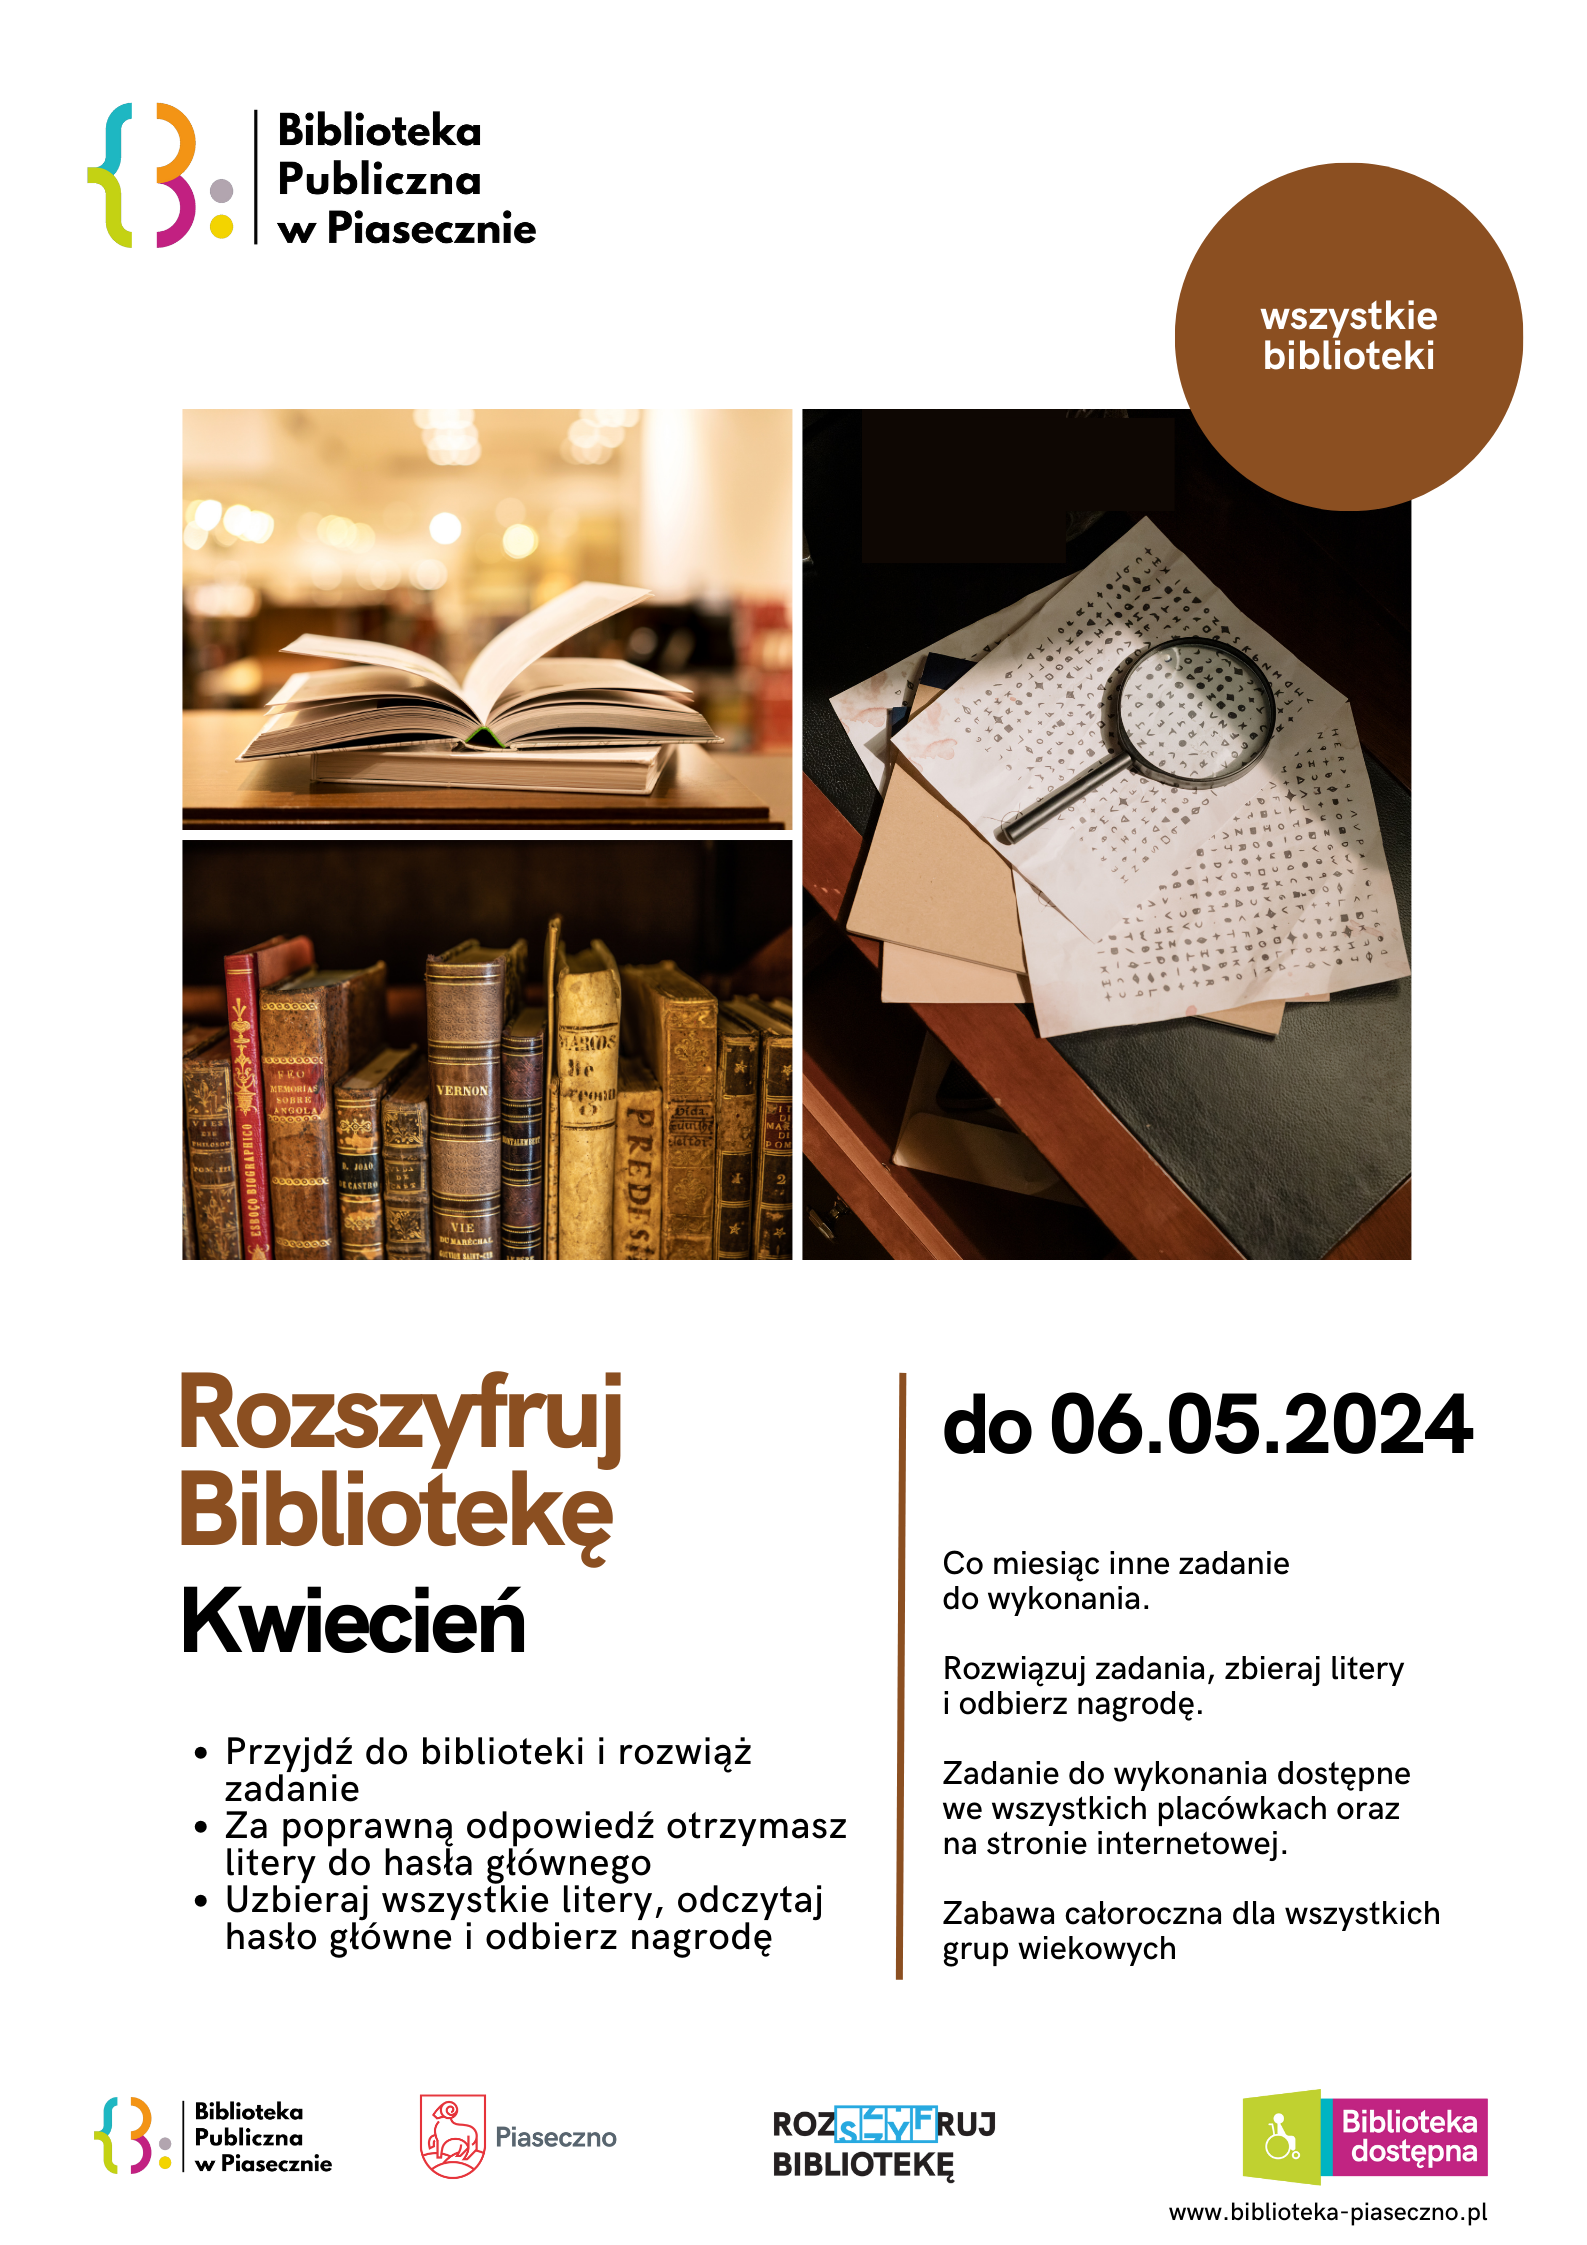 Plakat promujący akcję czytelniczą "Rozszyfruj Bibliotekę"